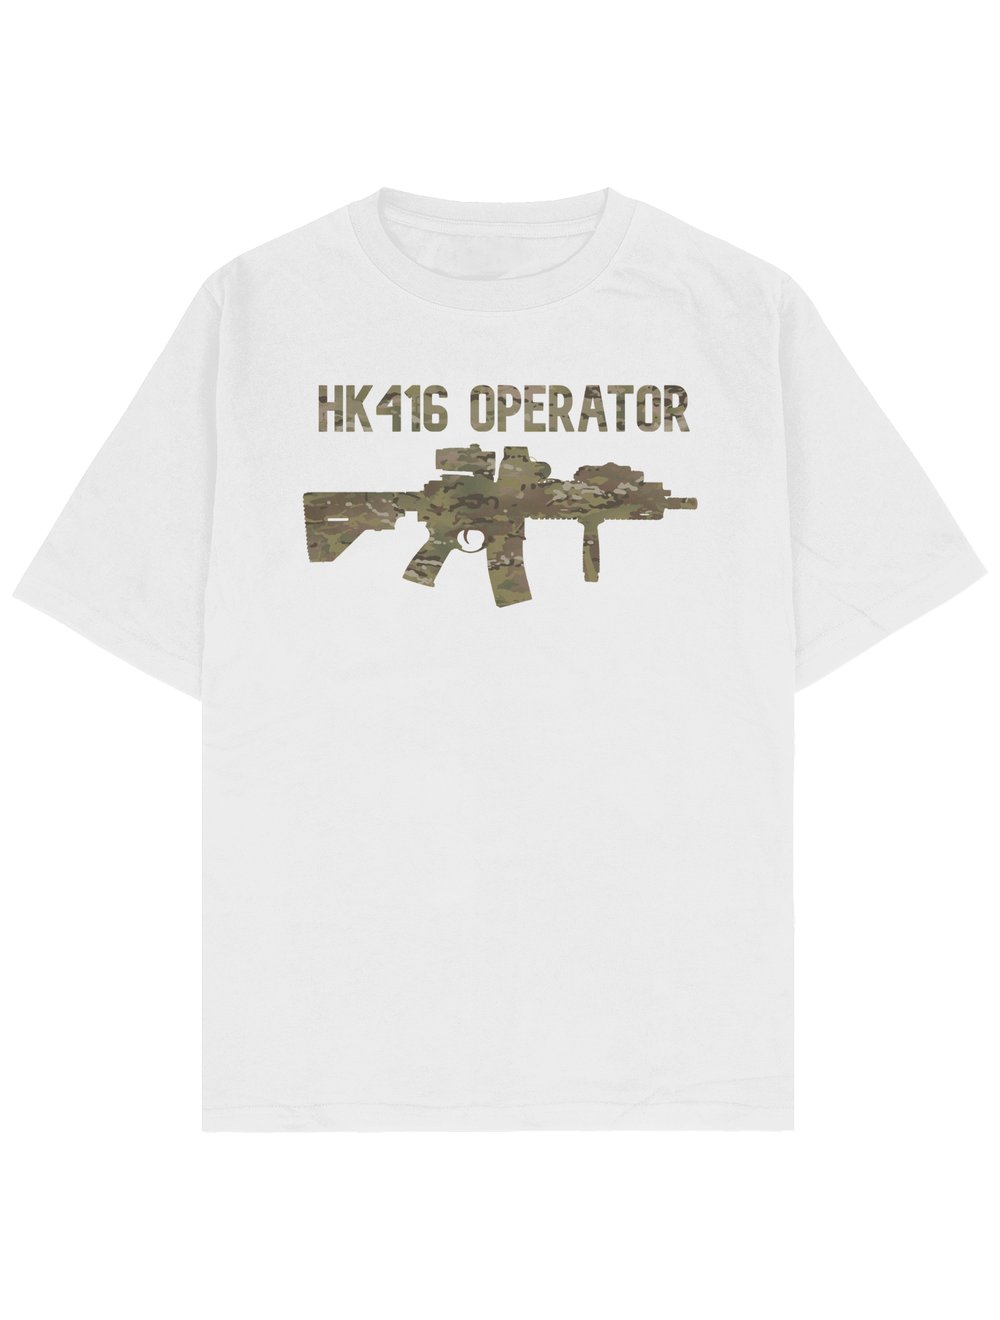 HK416 OPERATOR MULTİCAM OVERSİZE